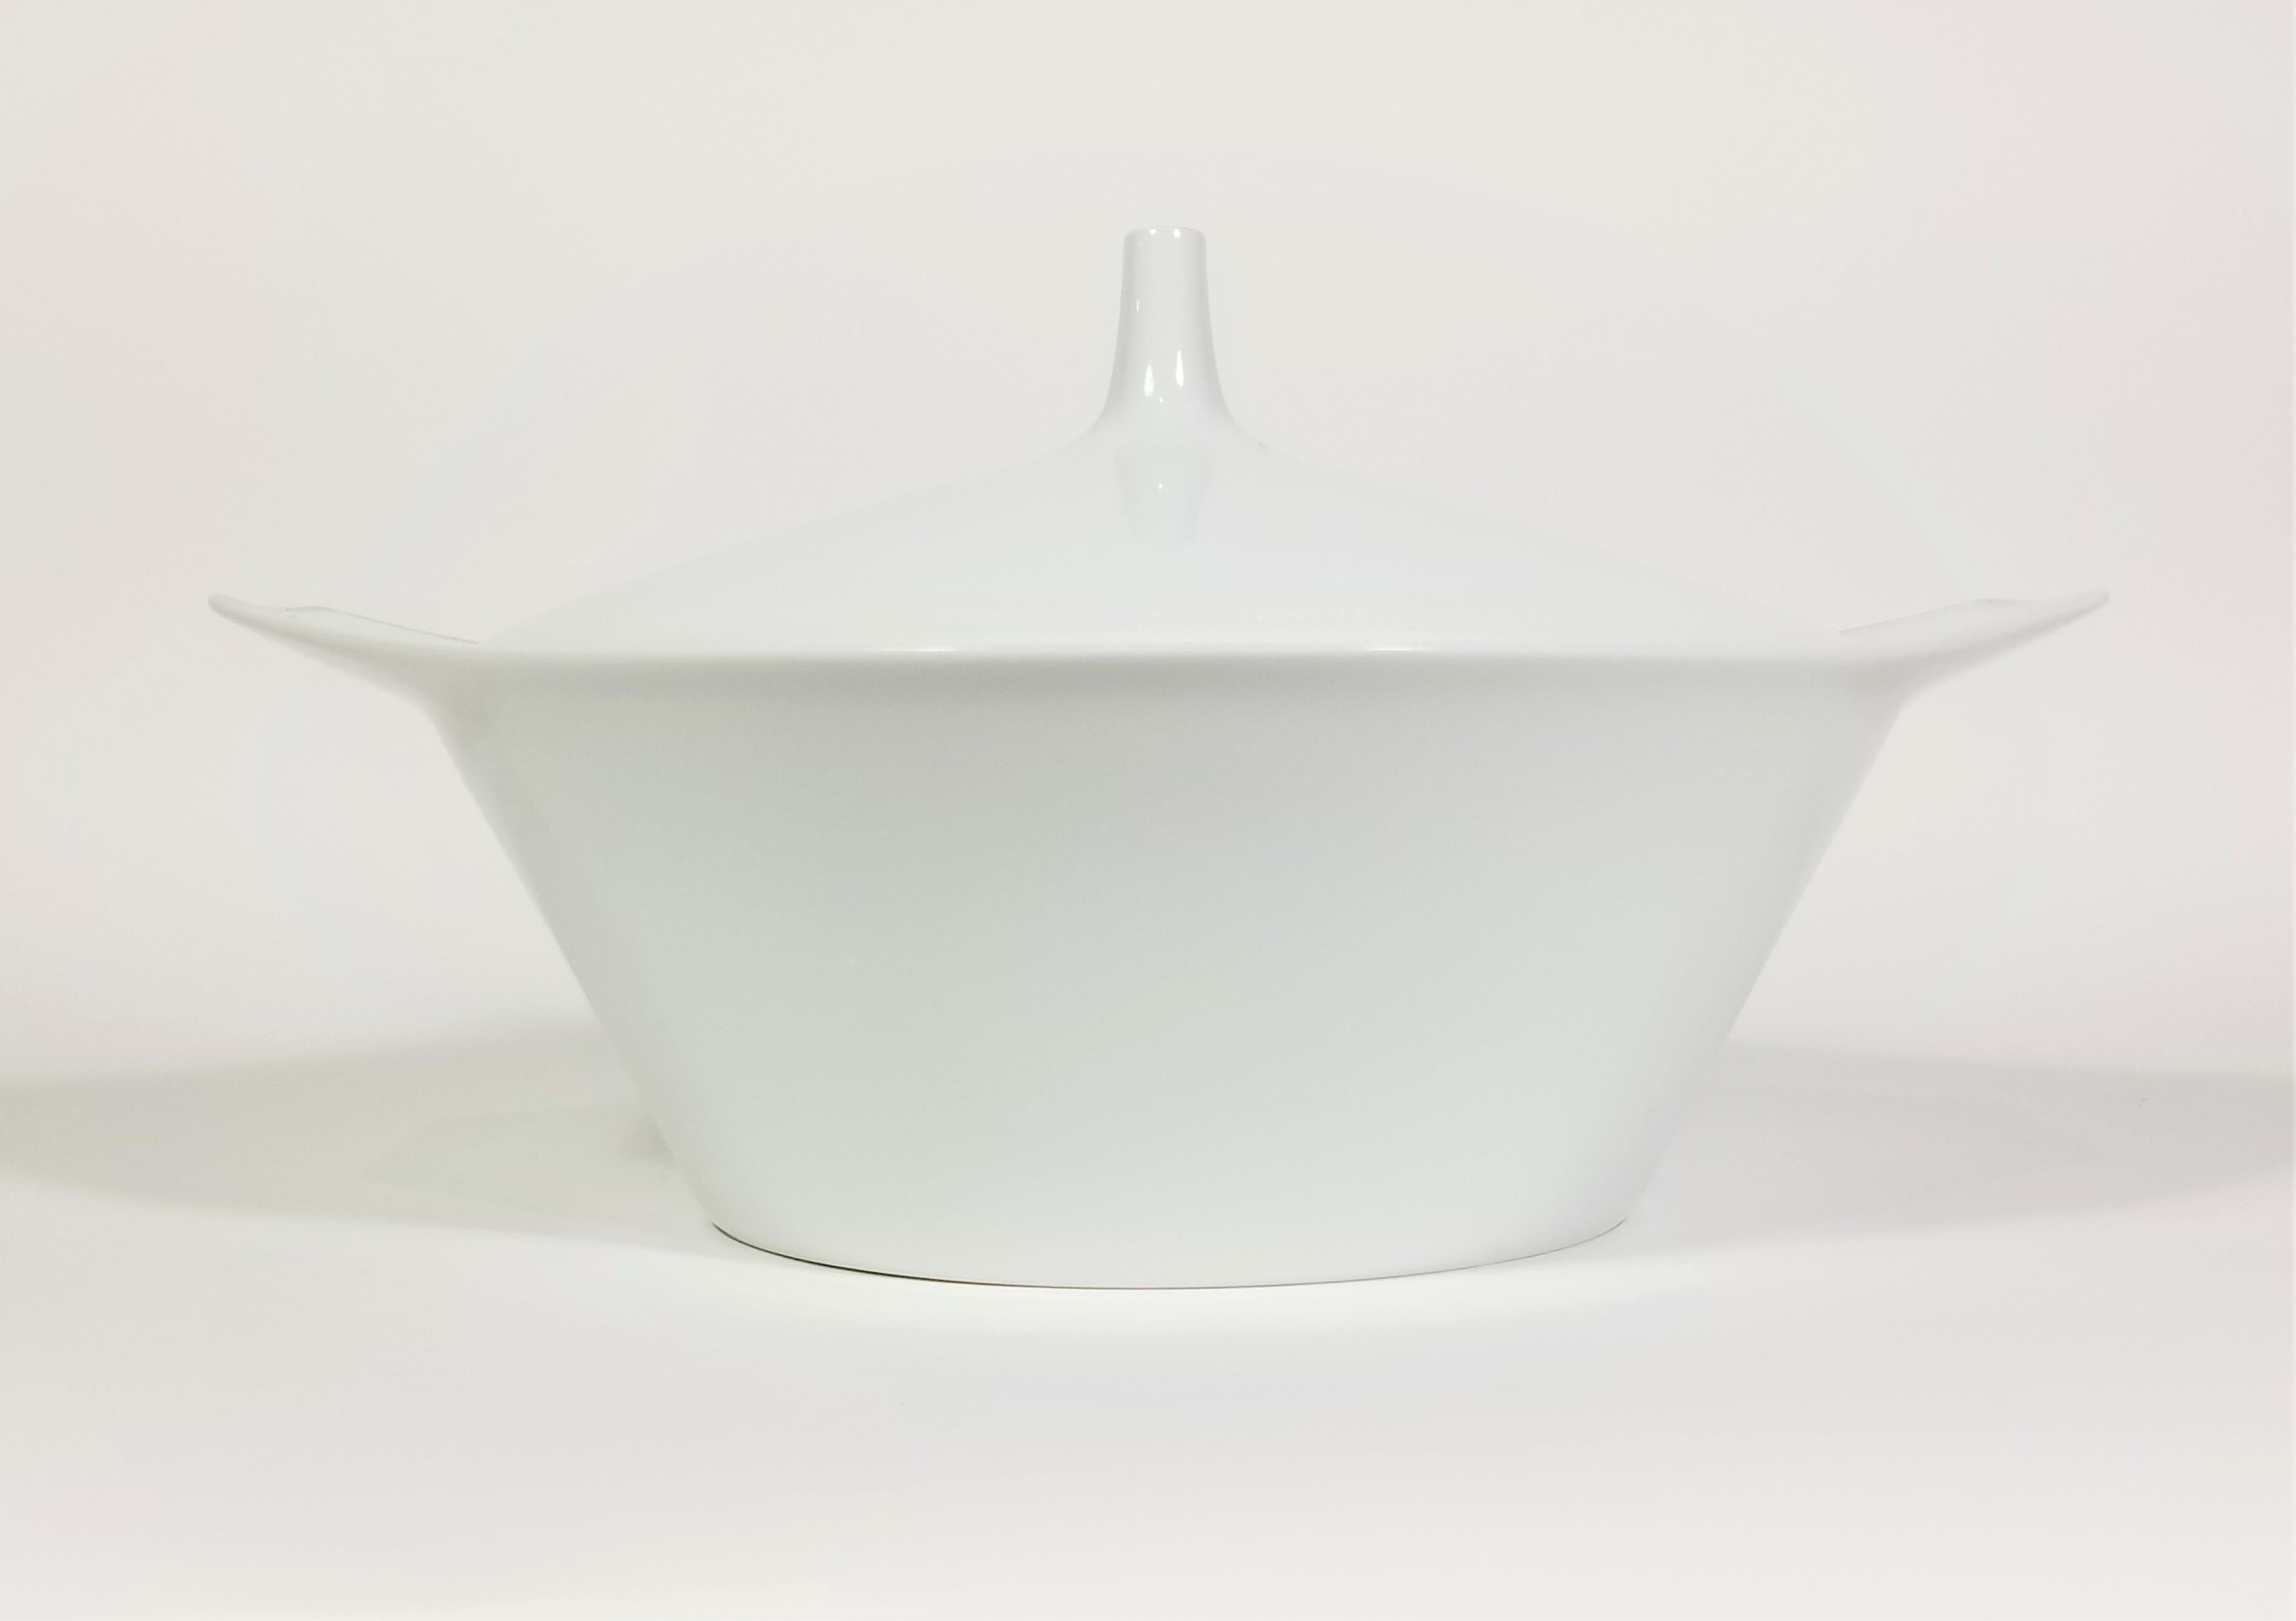 Rosenthal-Deckelschüssel aus der Mitte der 1960er Jahre. Weißes Porzellan mit Silberverzierung. 1960er Jahre Design.